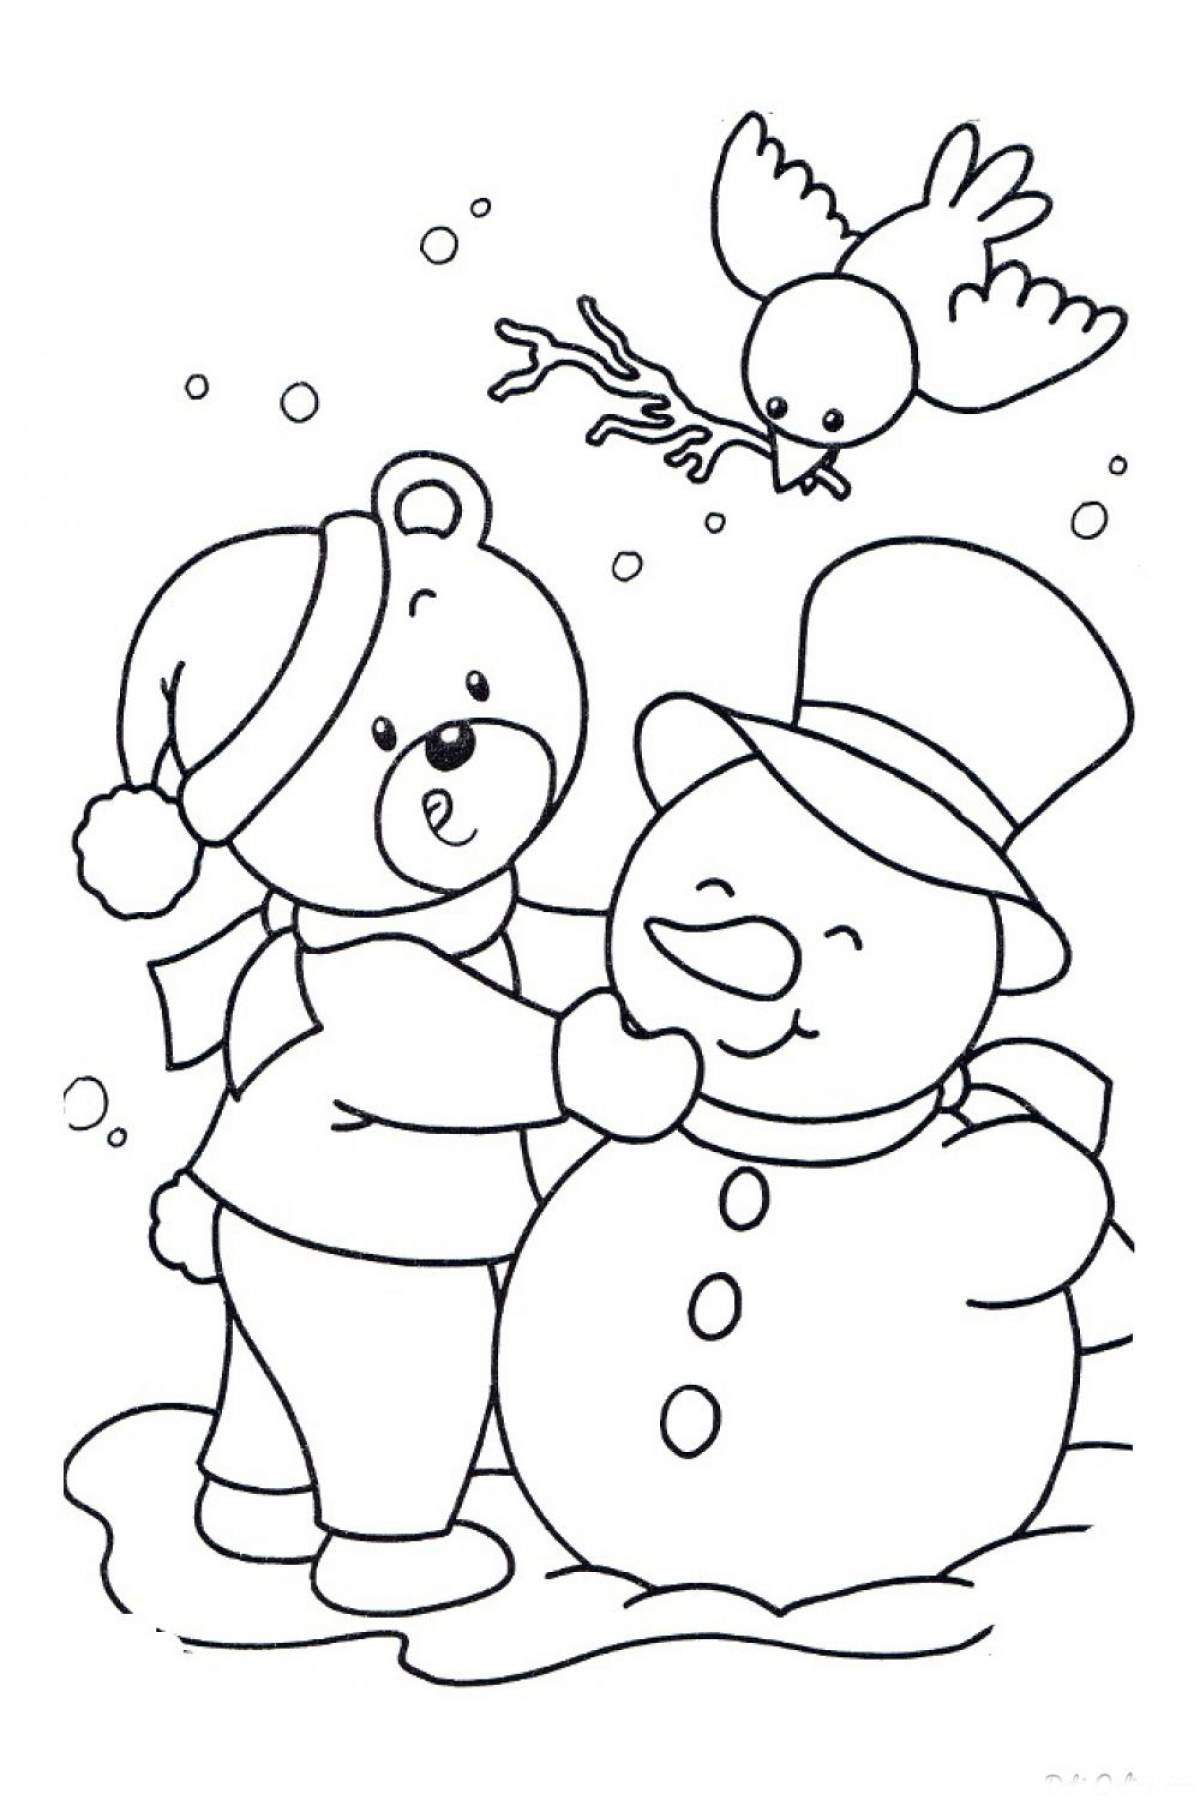 Snowman and bear